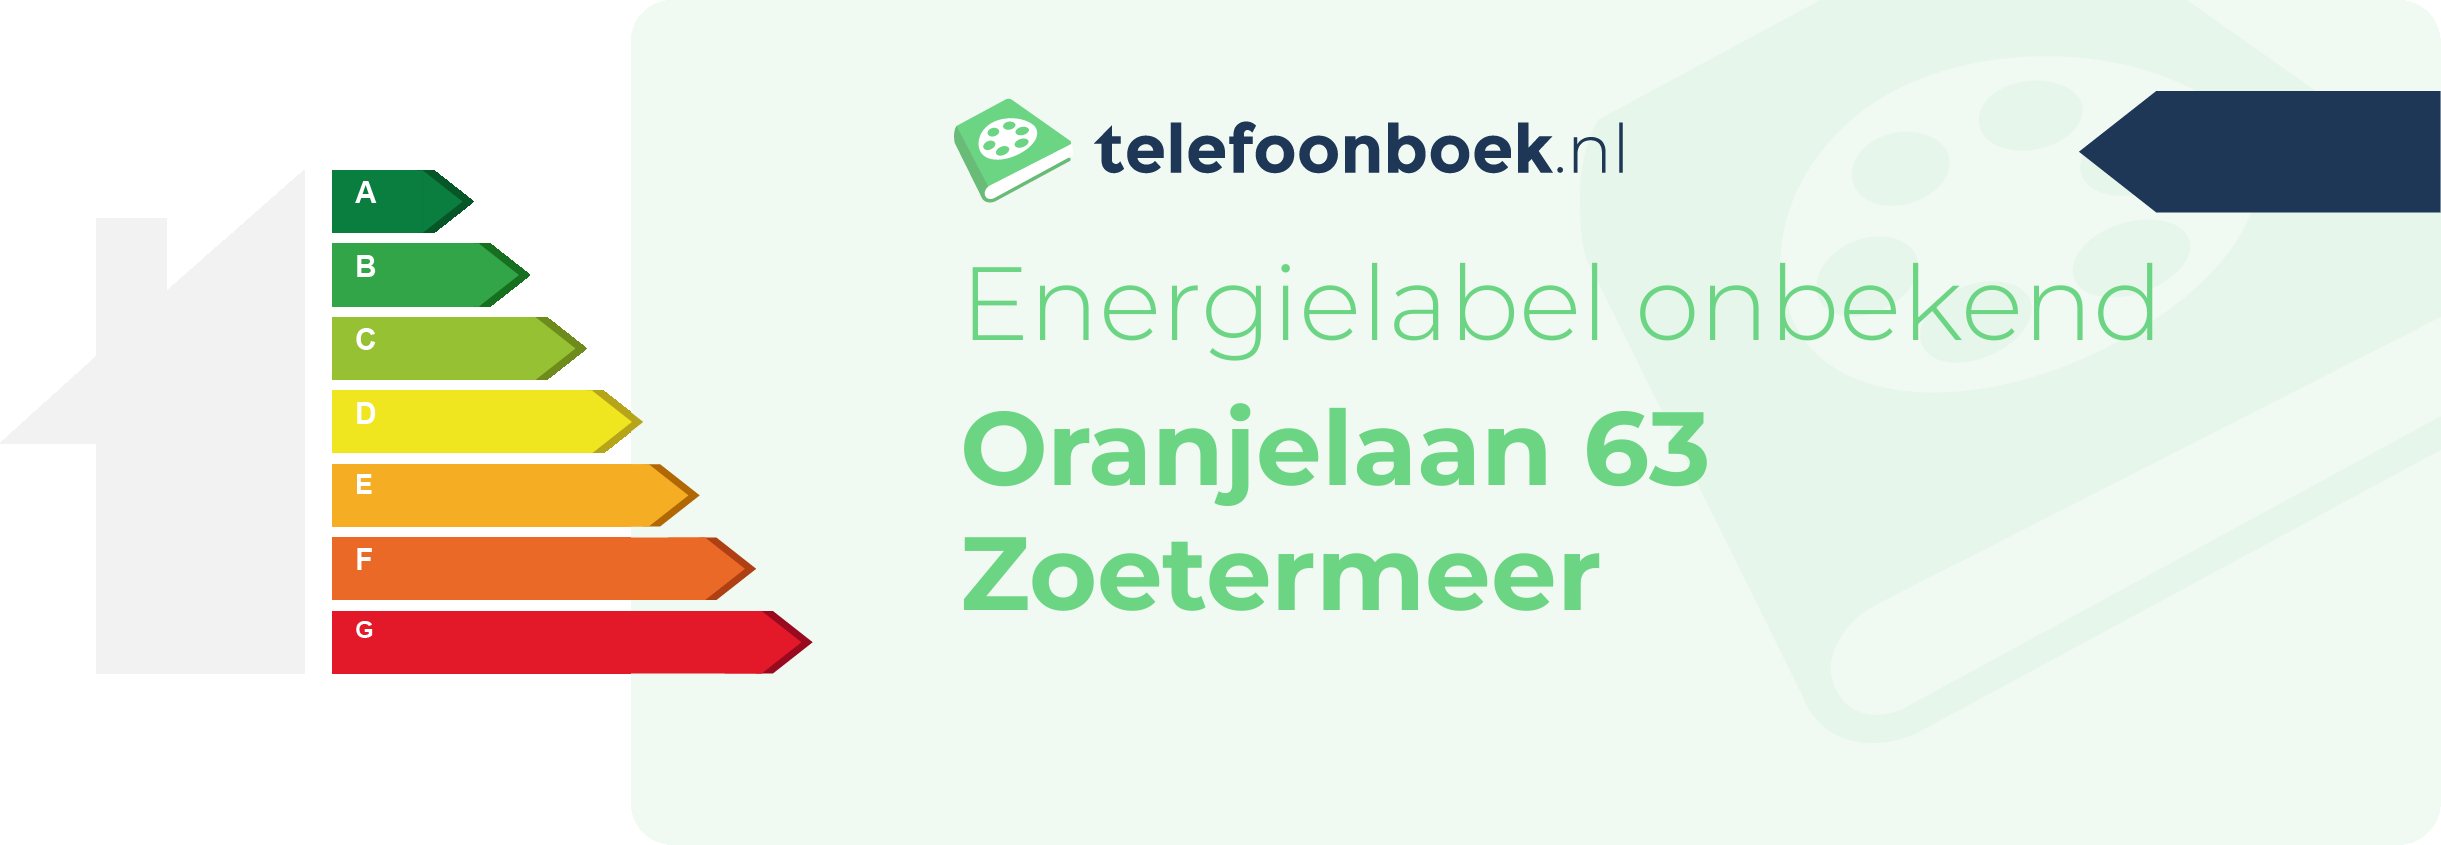 Energielabel Oranjelaan 63 Zoetermeer